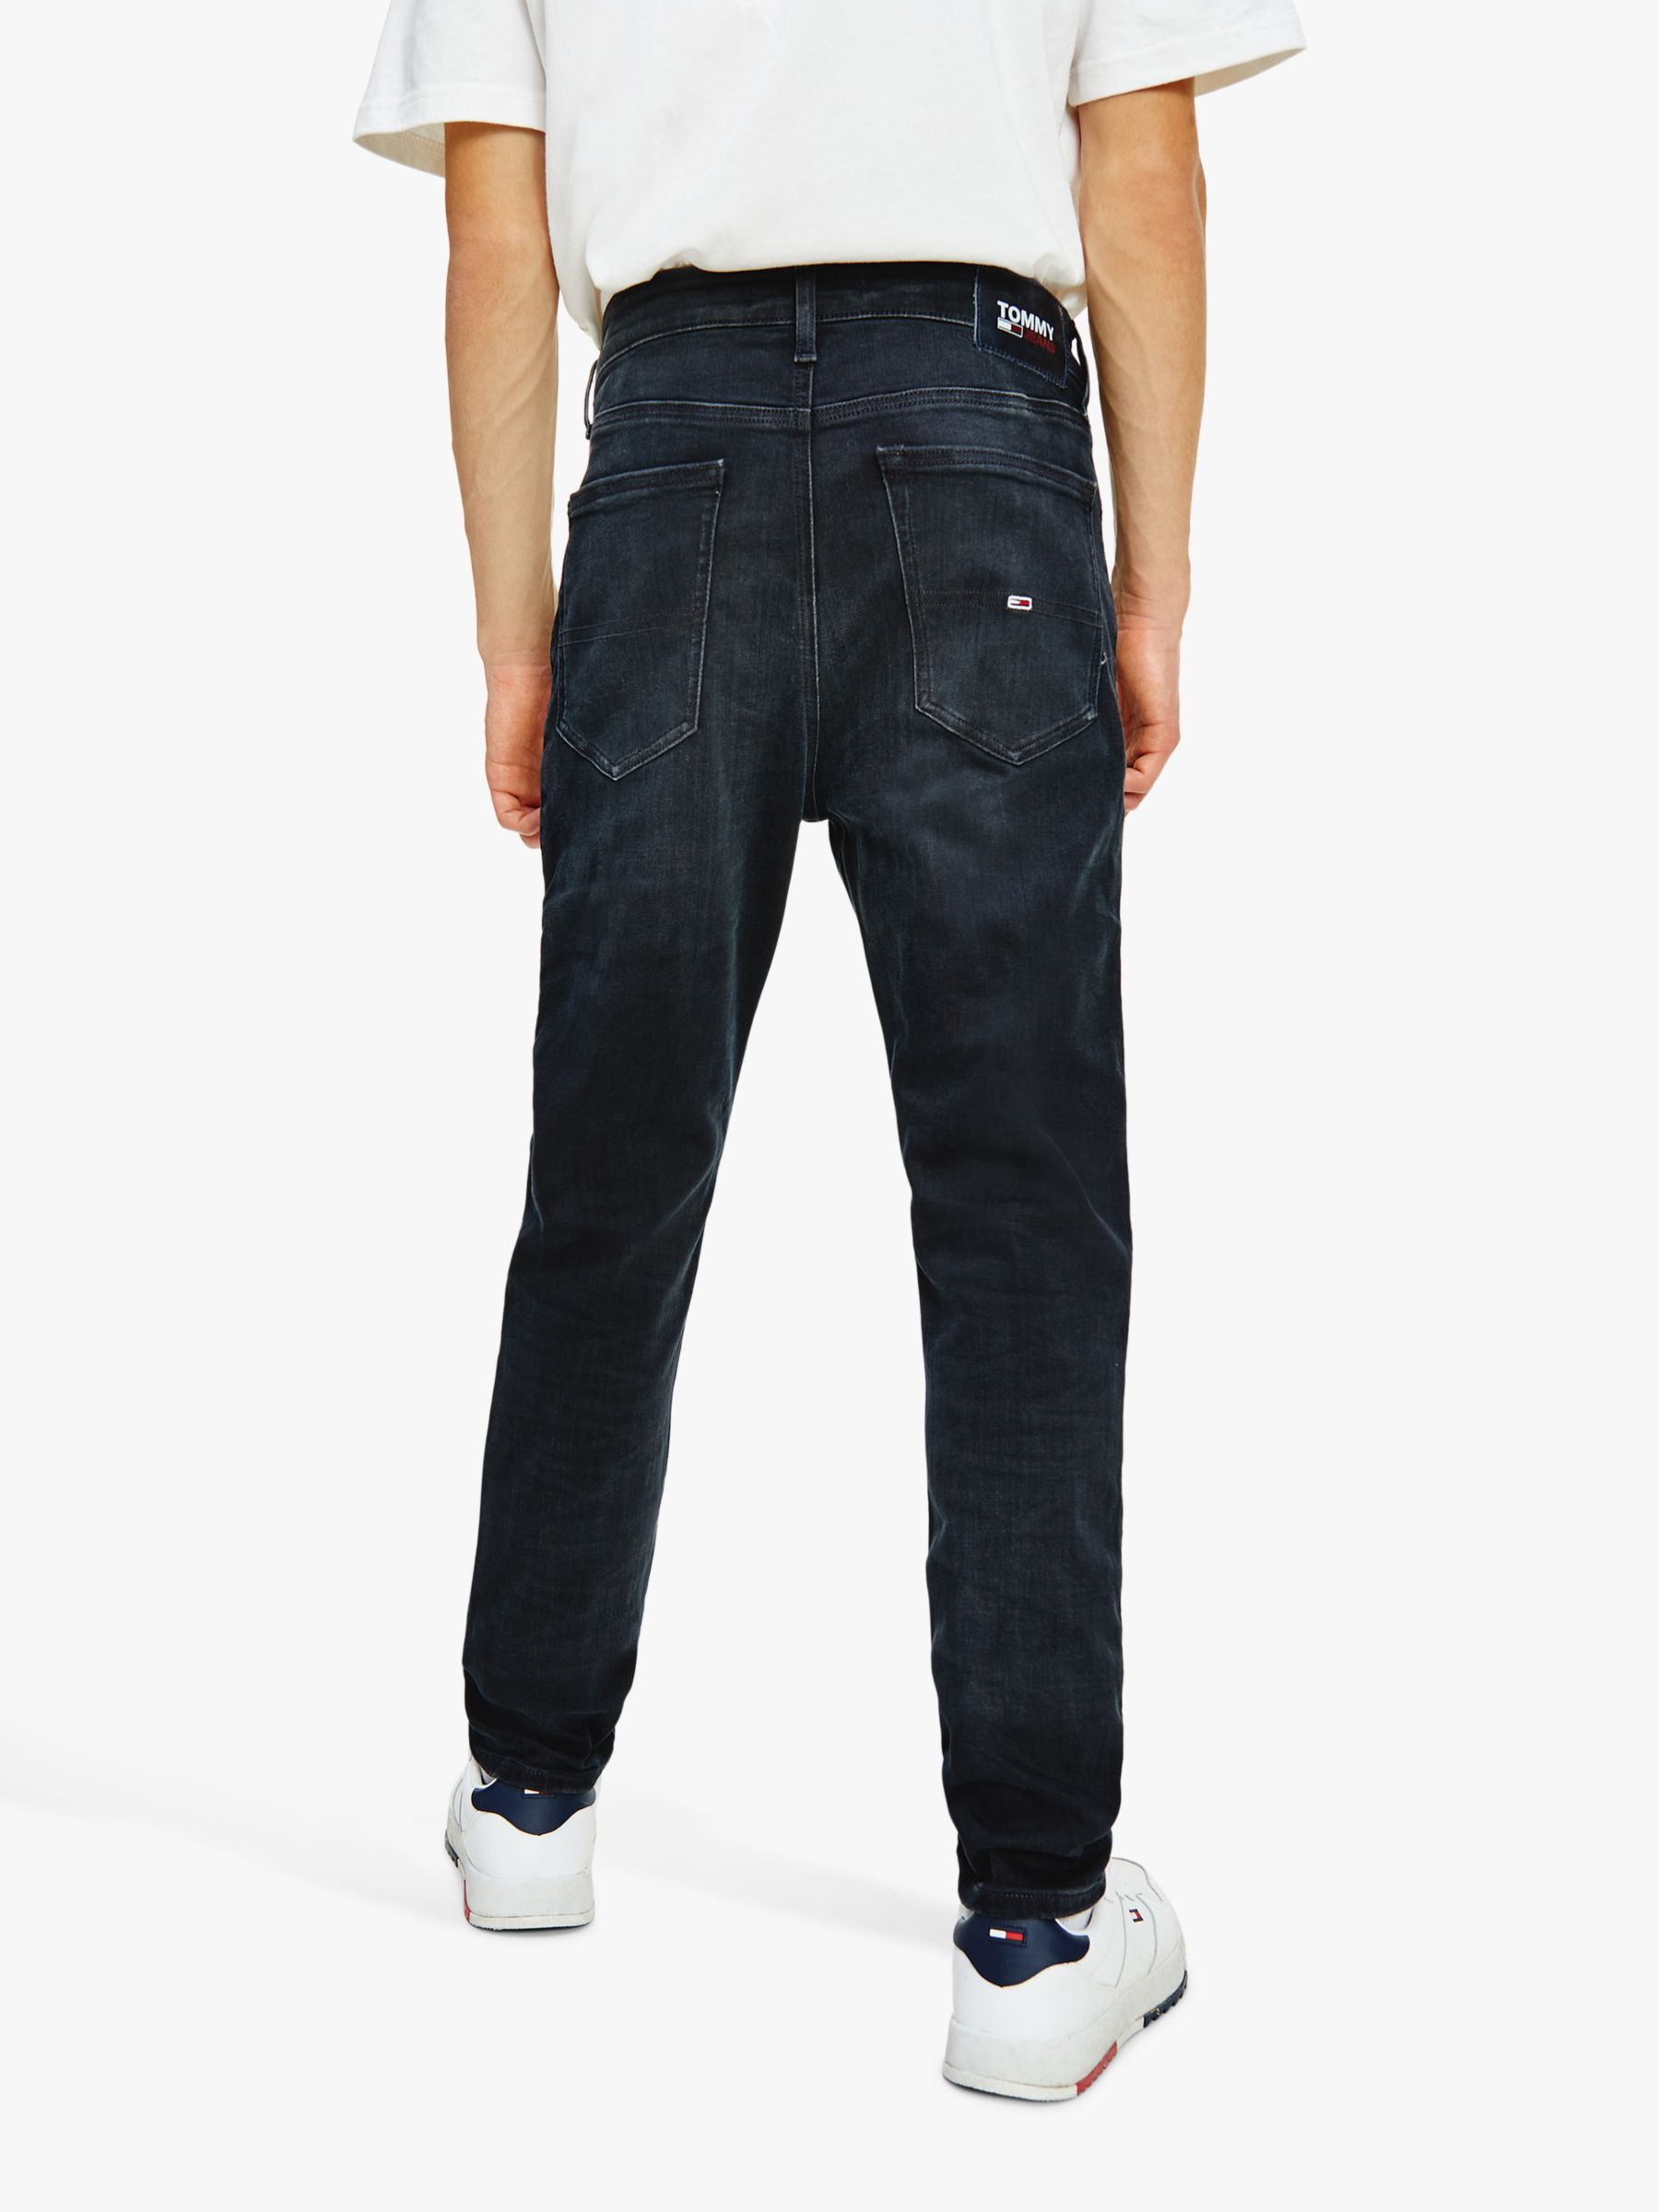 Buy Hilfiger Denim Jacob Skinny Fit Jeans, Dynamic Black Online at johnlewis.com